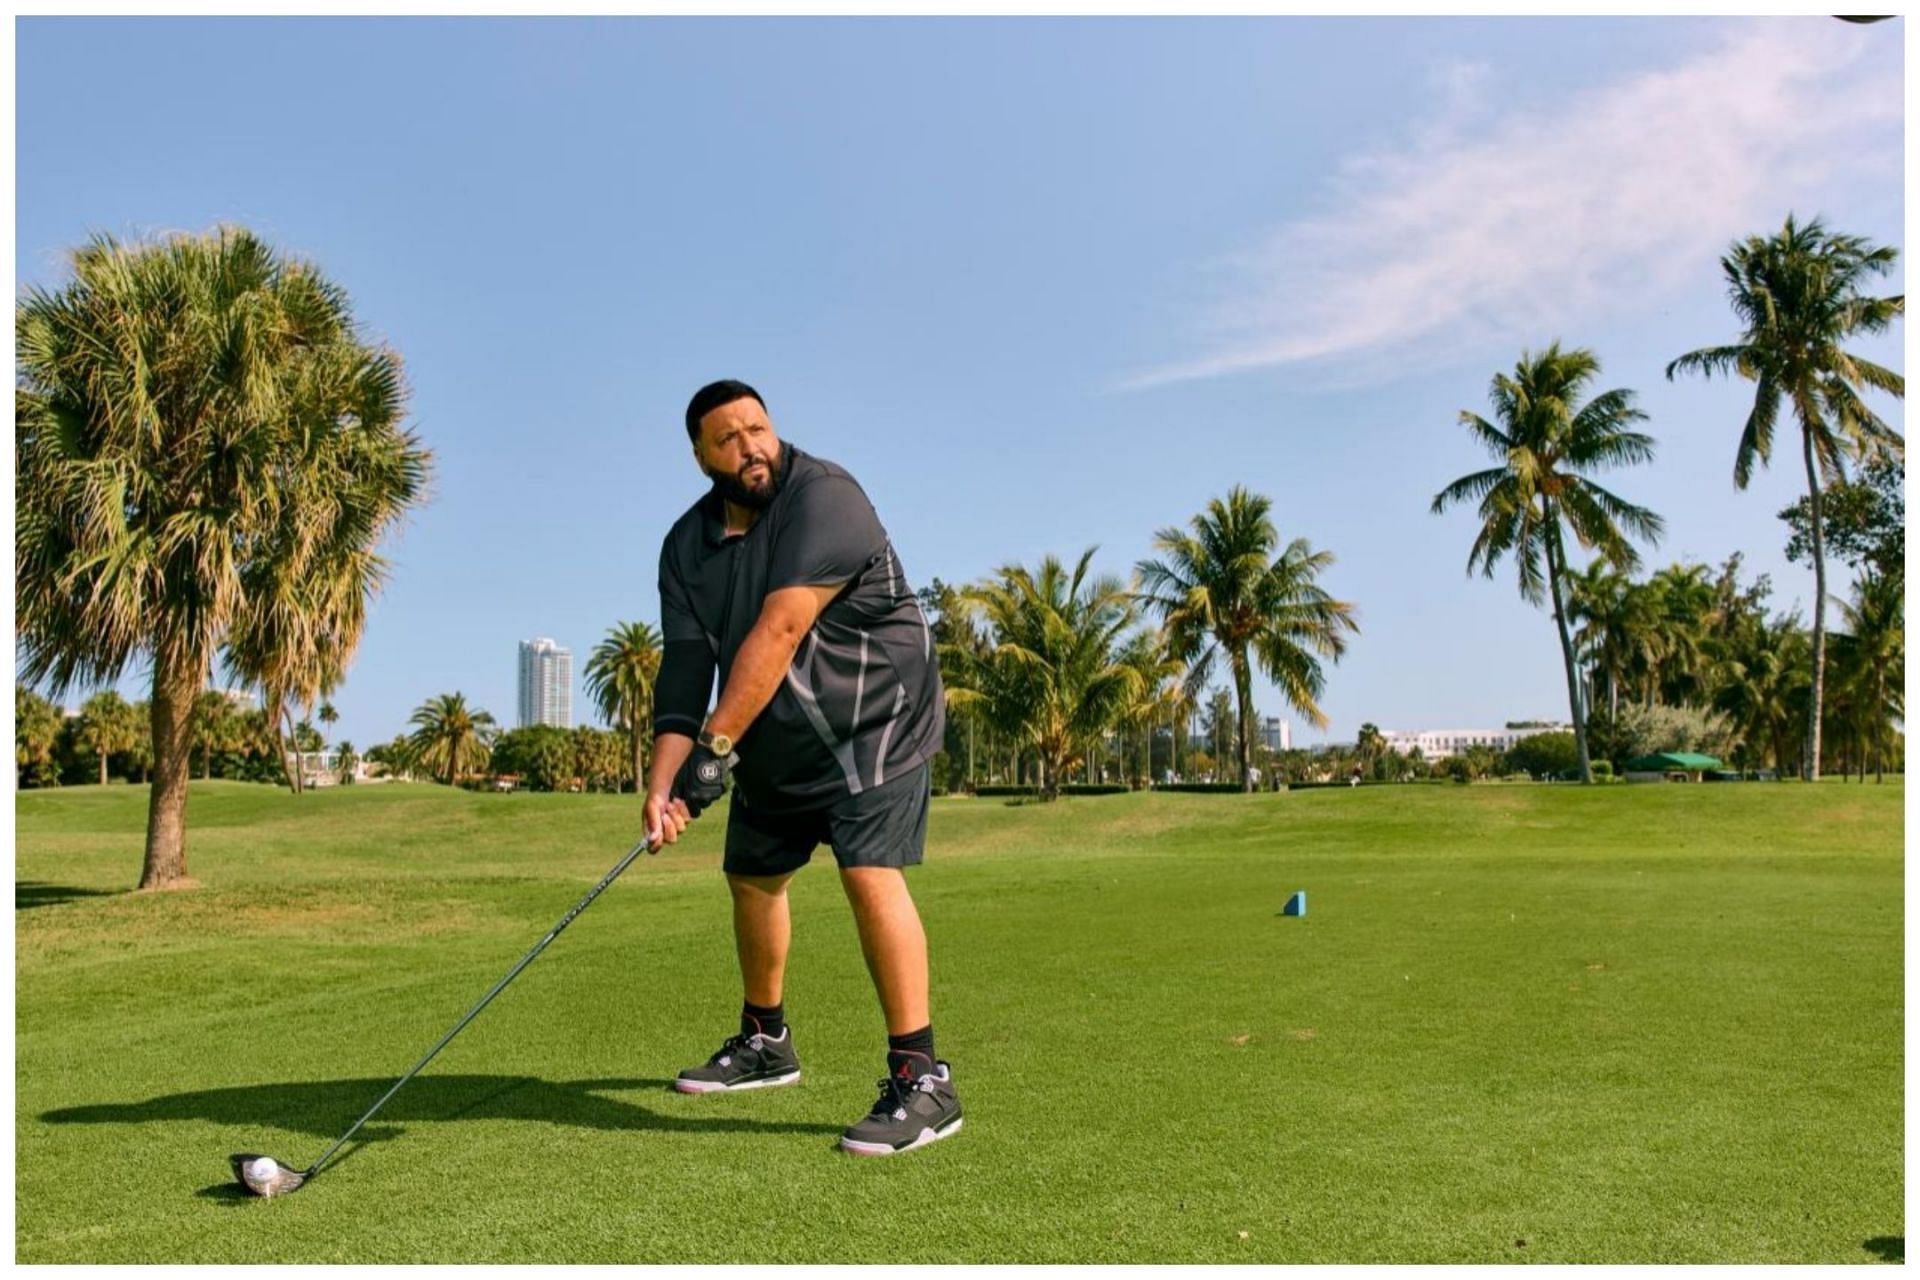 DJ Khaled is often seen playing golf(Image via Golf Digest)